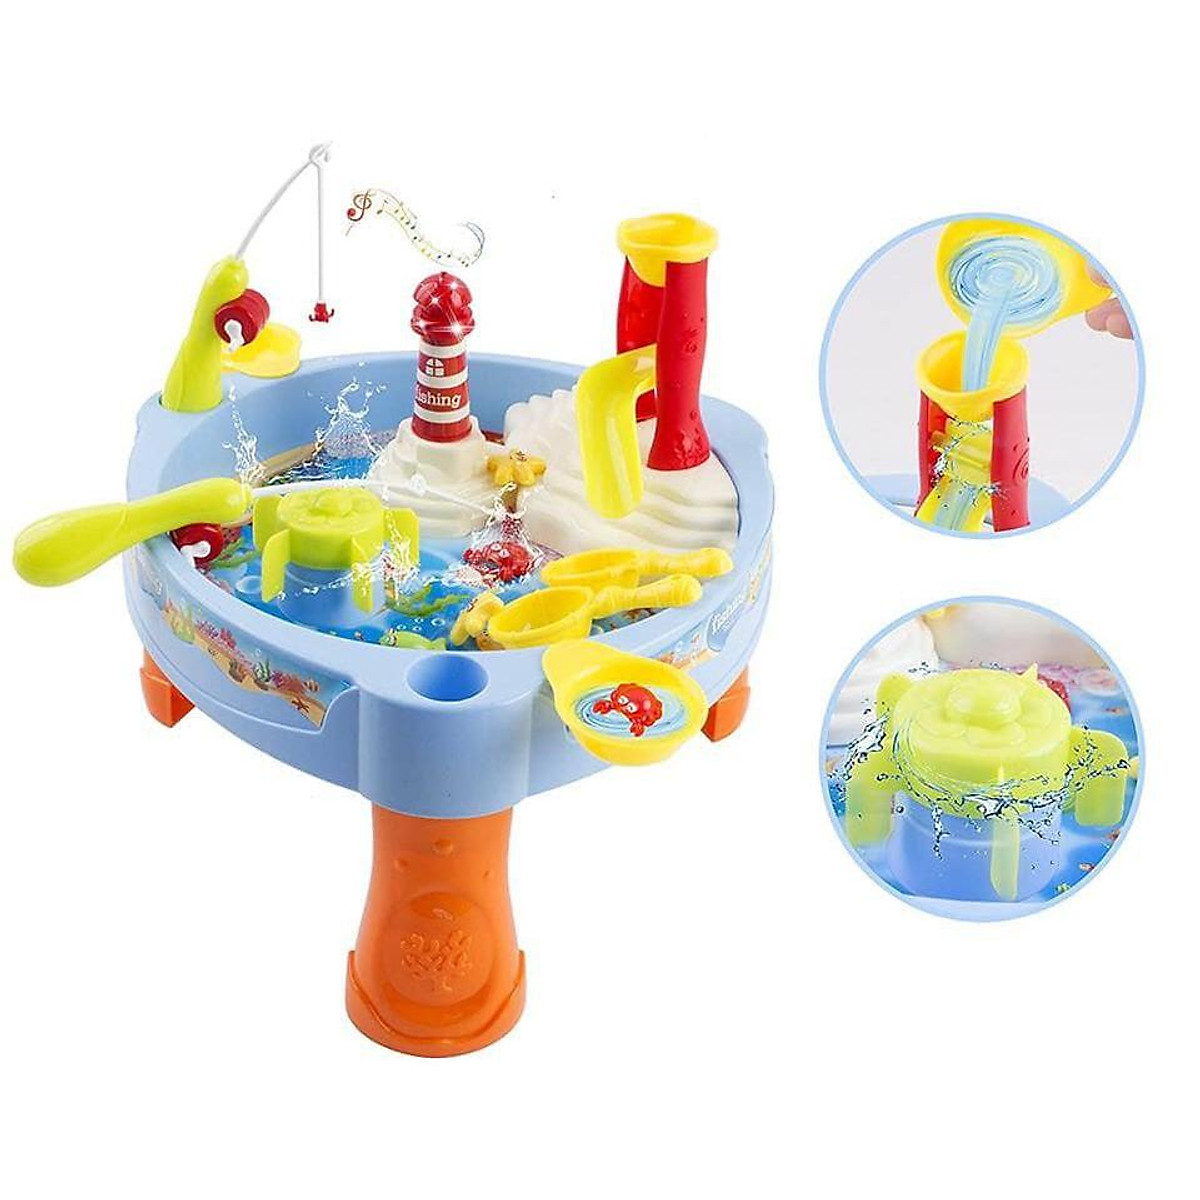 Đồ chơi câu cá cho bé có đèn nhạc Toys House 889-68 Phát triển vận động tinh và tư duy xã hội - tặng đồ chơi tắm 2 món